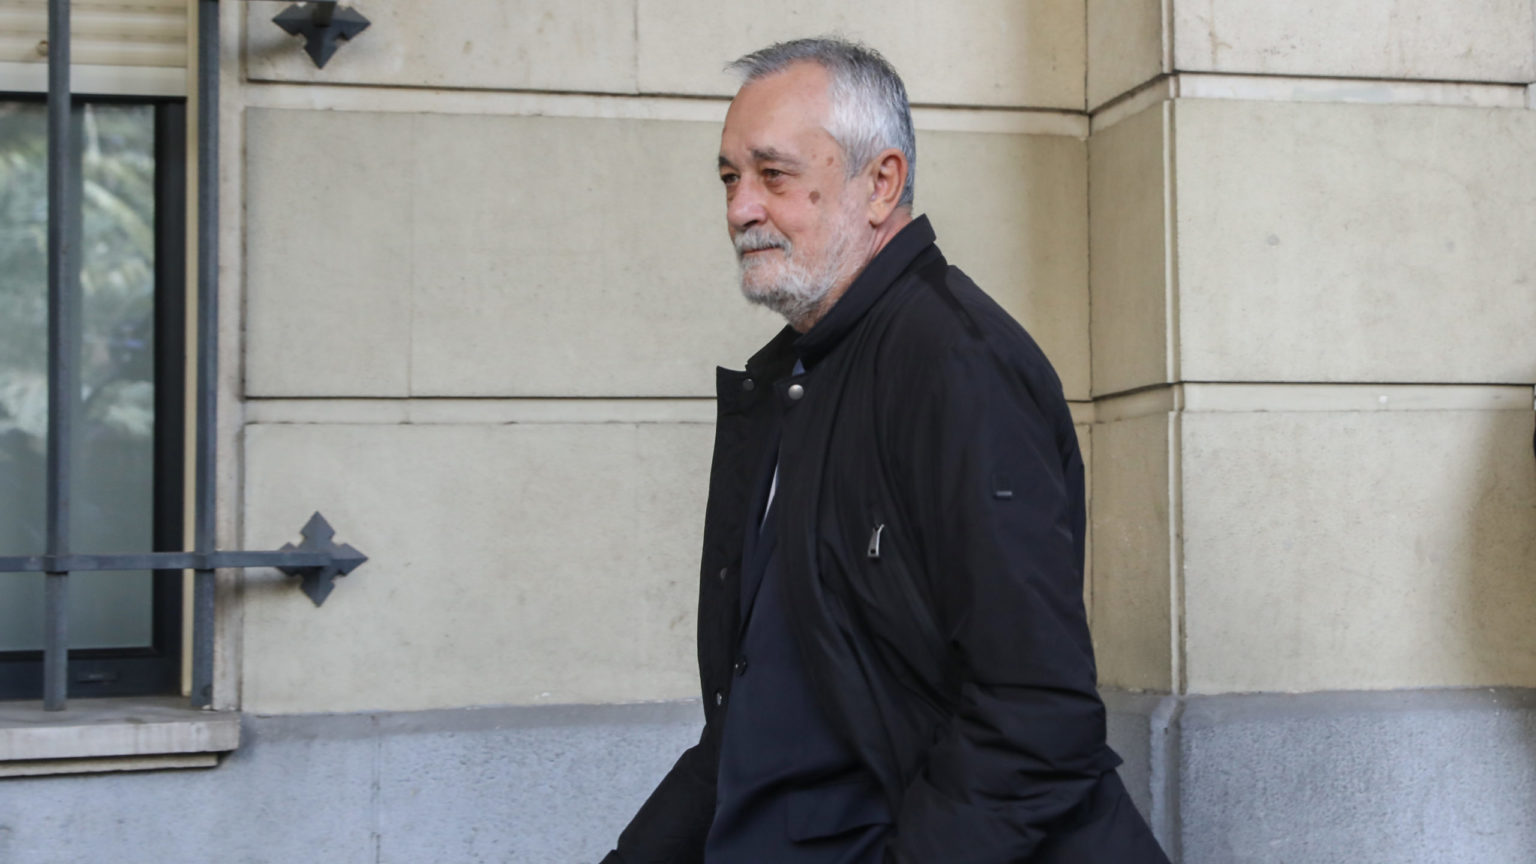 La Fiscalía pide suspender el ingreso en prisión de José Antonio Griñán por su enfermedad